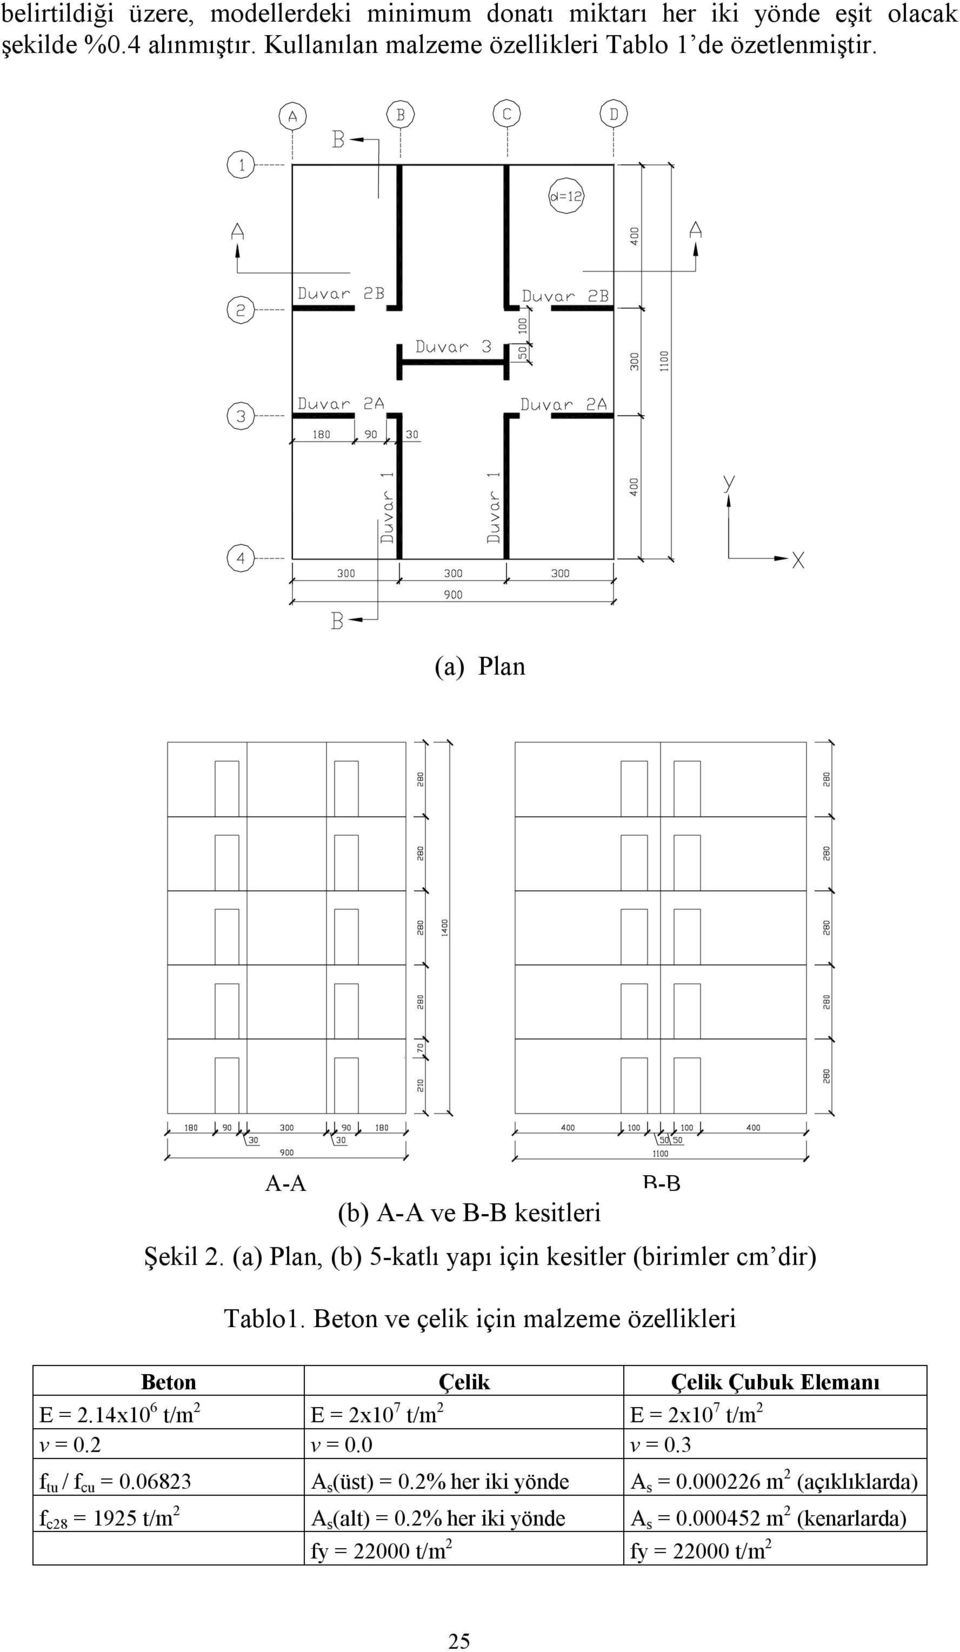 (a) Plan, (b) 5-katlı yapı için kesitler (birimler cm dir) Tablo1. Beton ve çelik için malzeme özellikleri Beton Çelik Çelik Çubuk Elemanı E = 2.